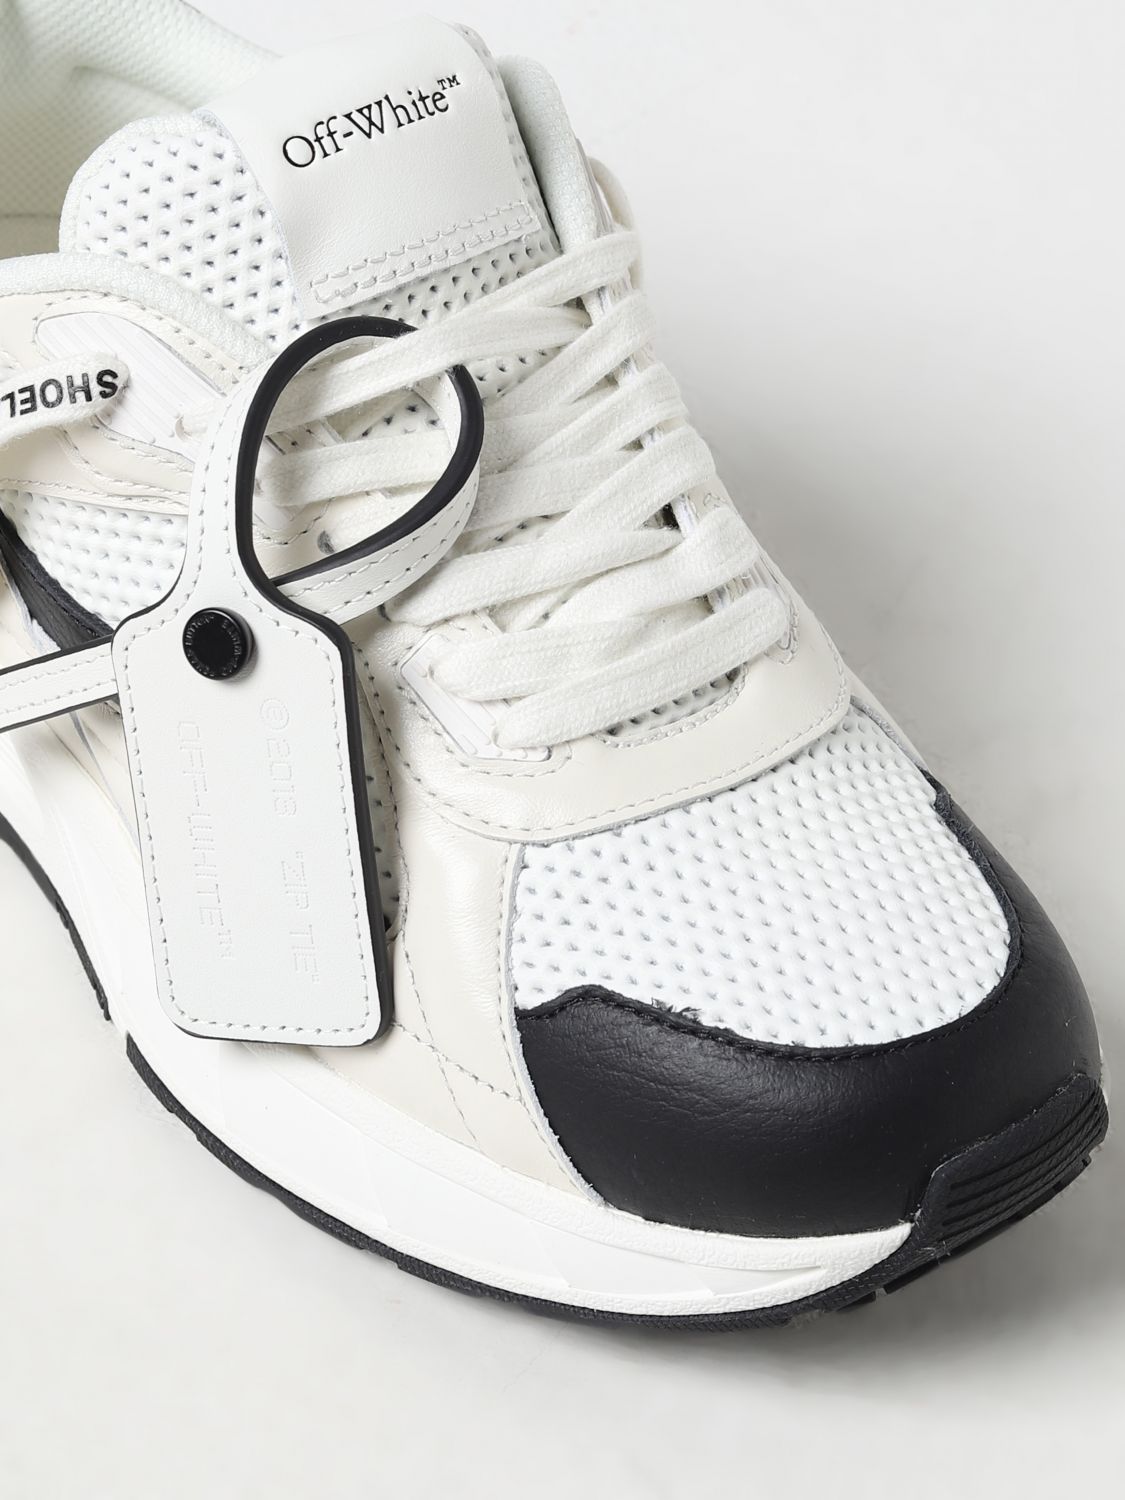 OFF-WHITE: Zapatillas para mujer, Blanco 1  Zapatillas Off-White  OWIA275C99LEA002 en línea en